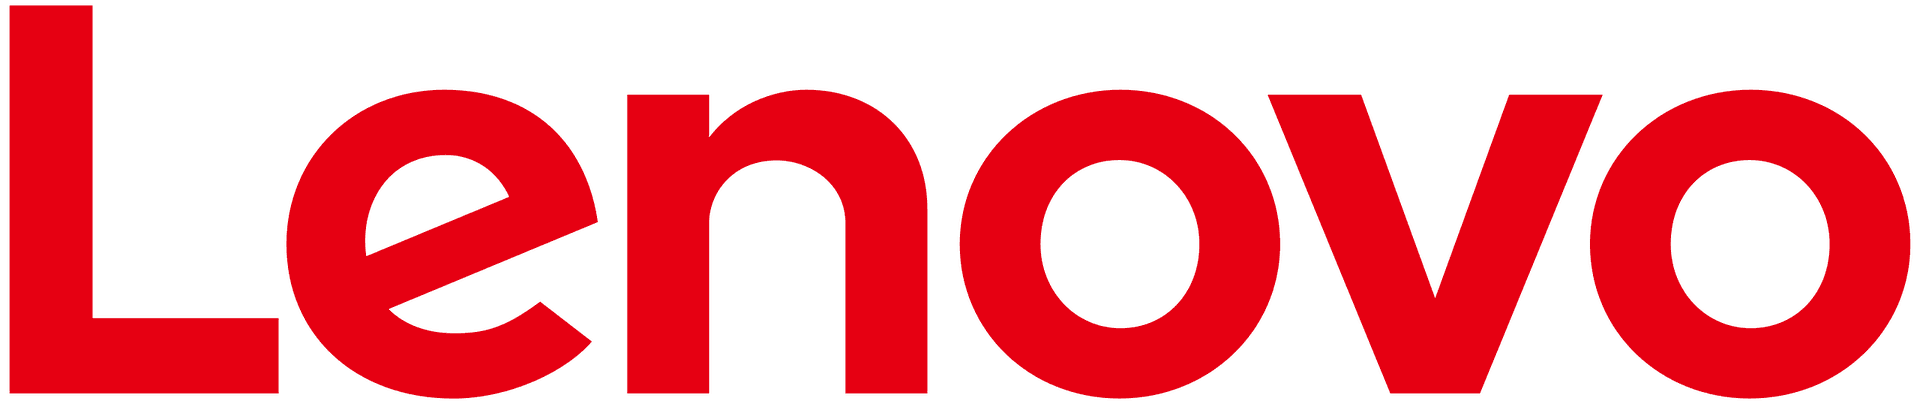 Brand: Lenovo